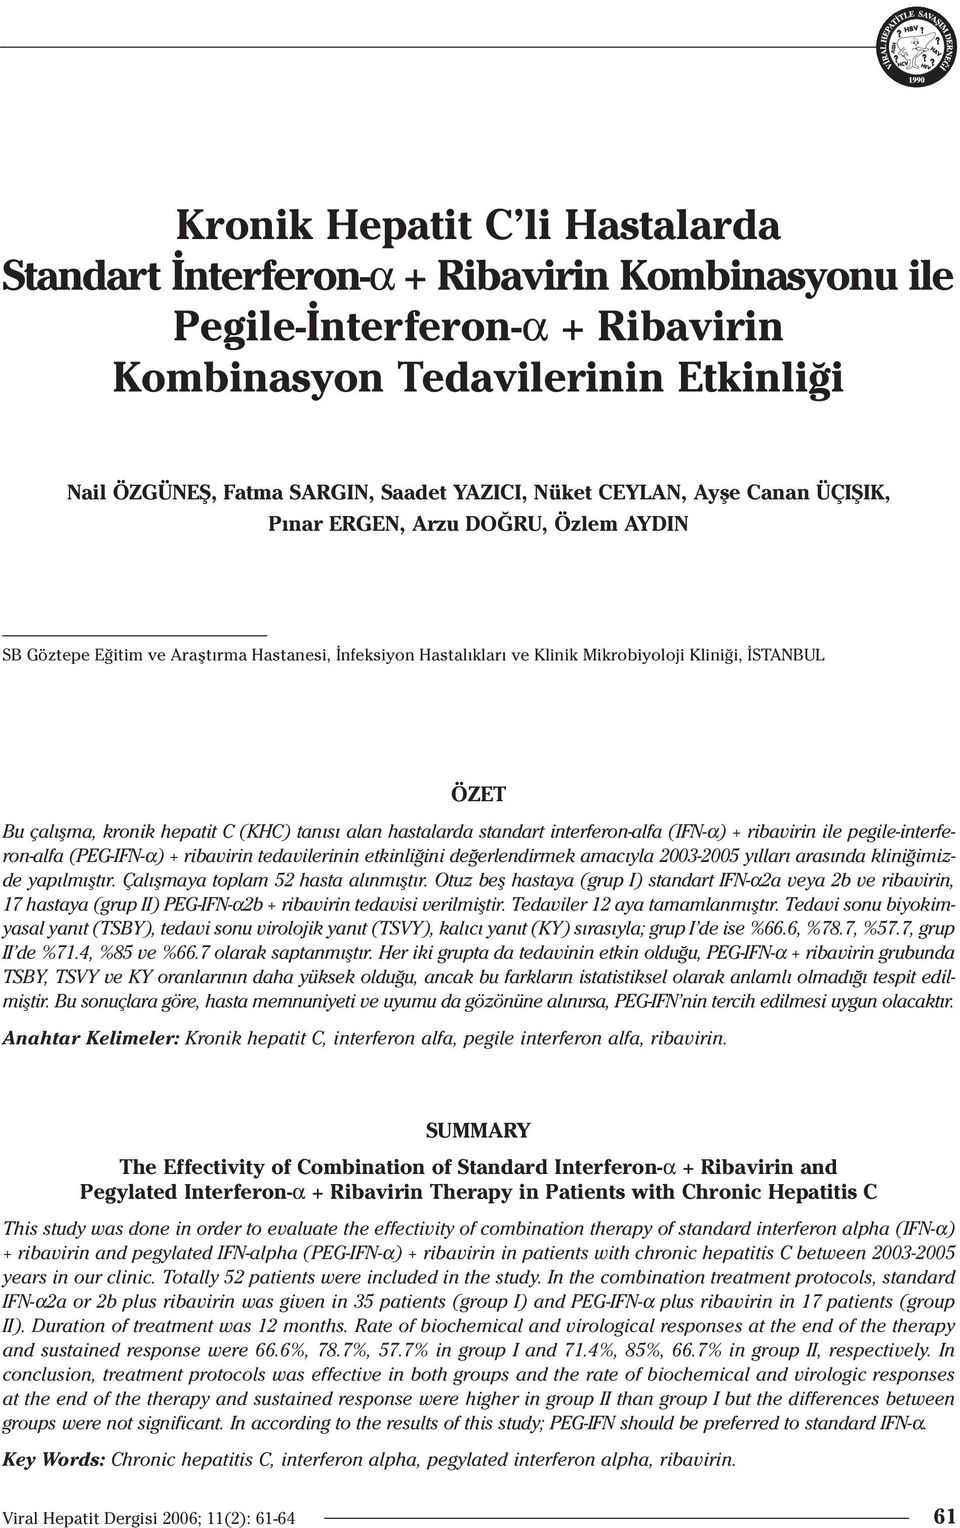 hepatit C (KHC) tan s alan hastalarda standart interferon-alfa (IFN-α) + ribavirin ile pegile-interferon-alfa (PEG-IFN-α) + ribavirin tedavilerinin etkinli ini de erlendirmek amac yla 2003-2005 y